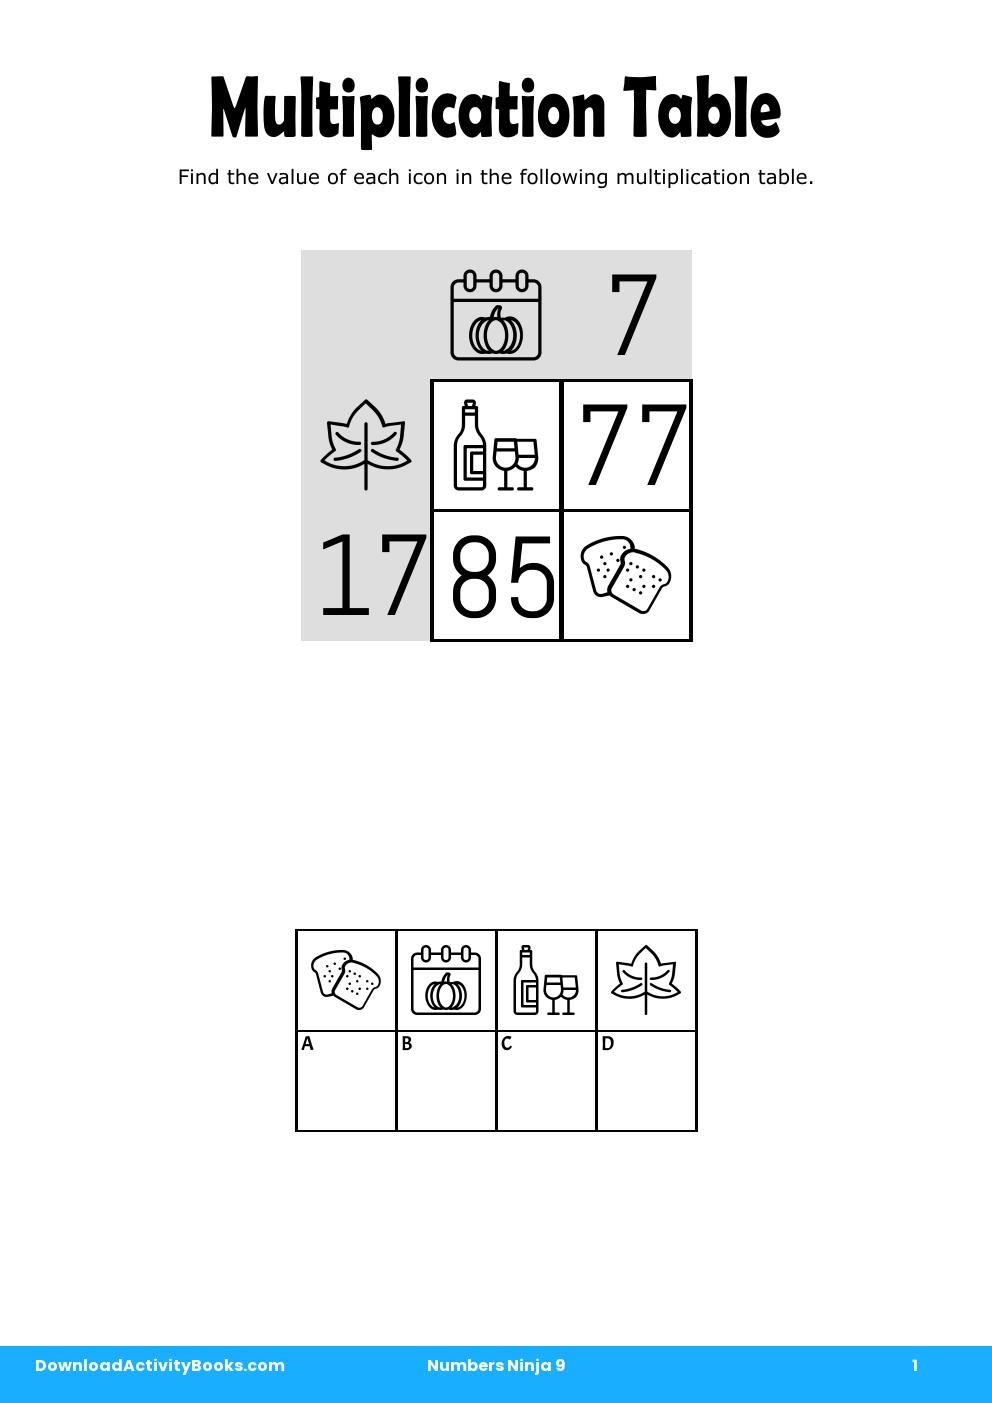 Multiplication Table in Numbers Ninja 9